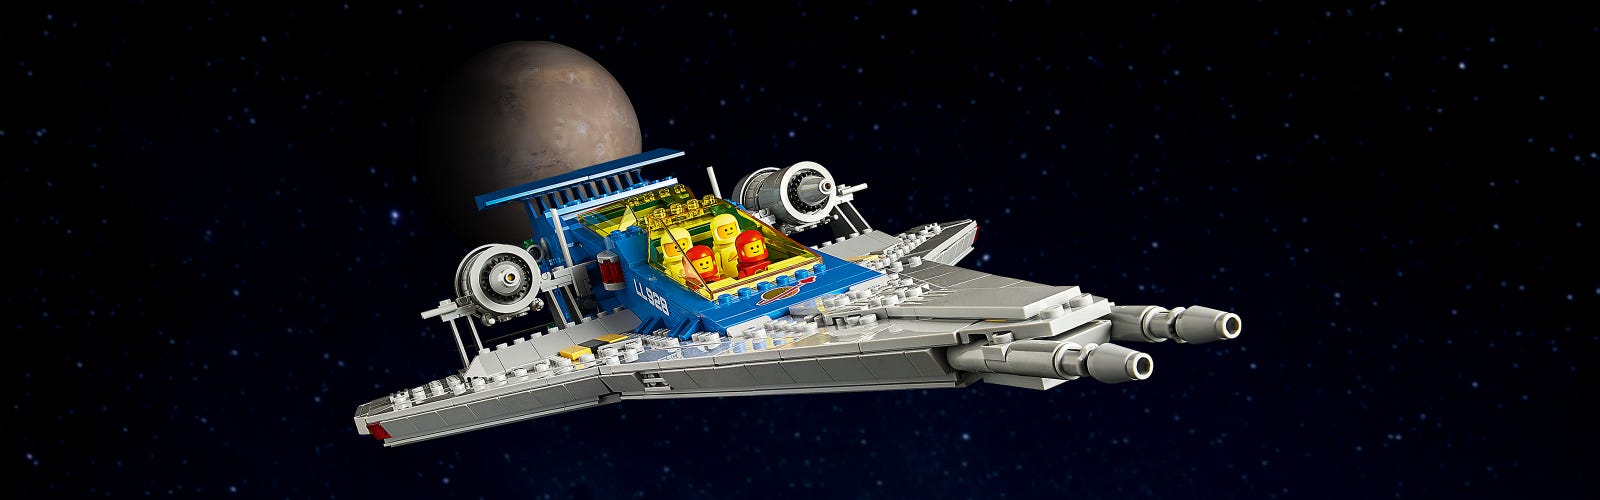 Les meilleurs ensembles LEGO Technic pour adultes 